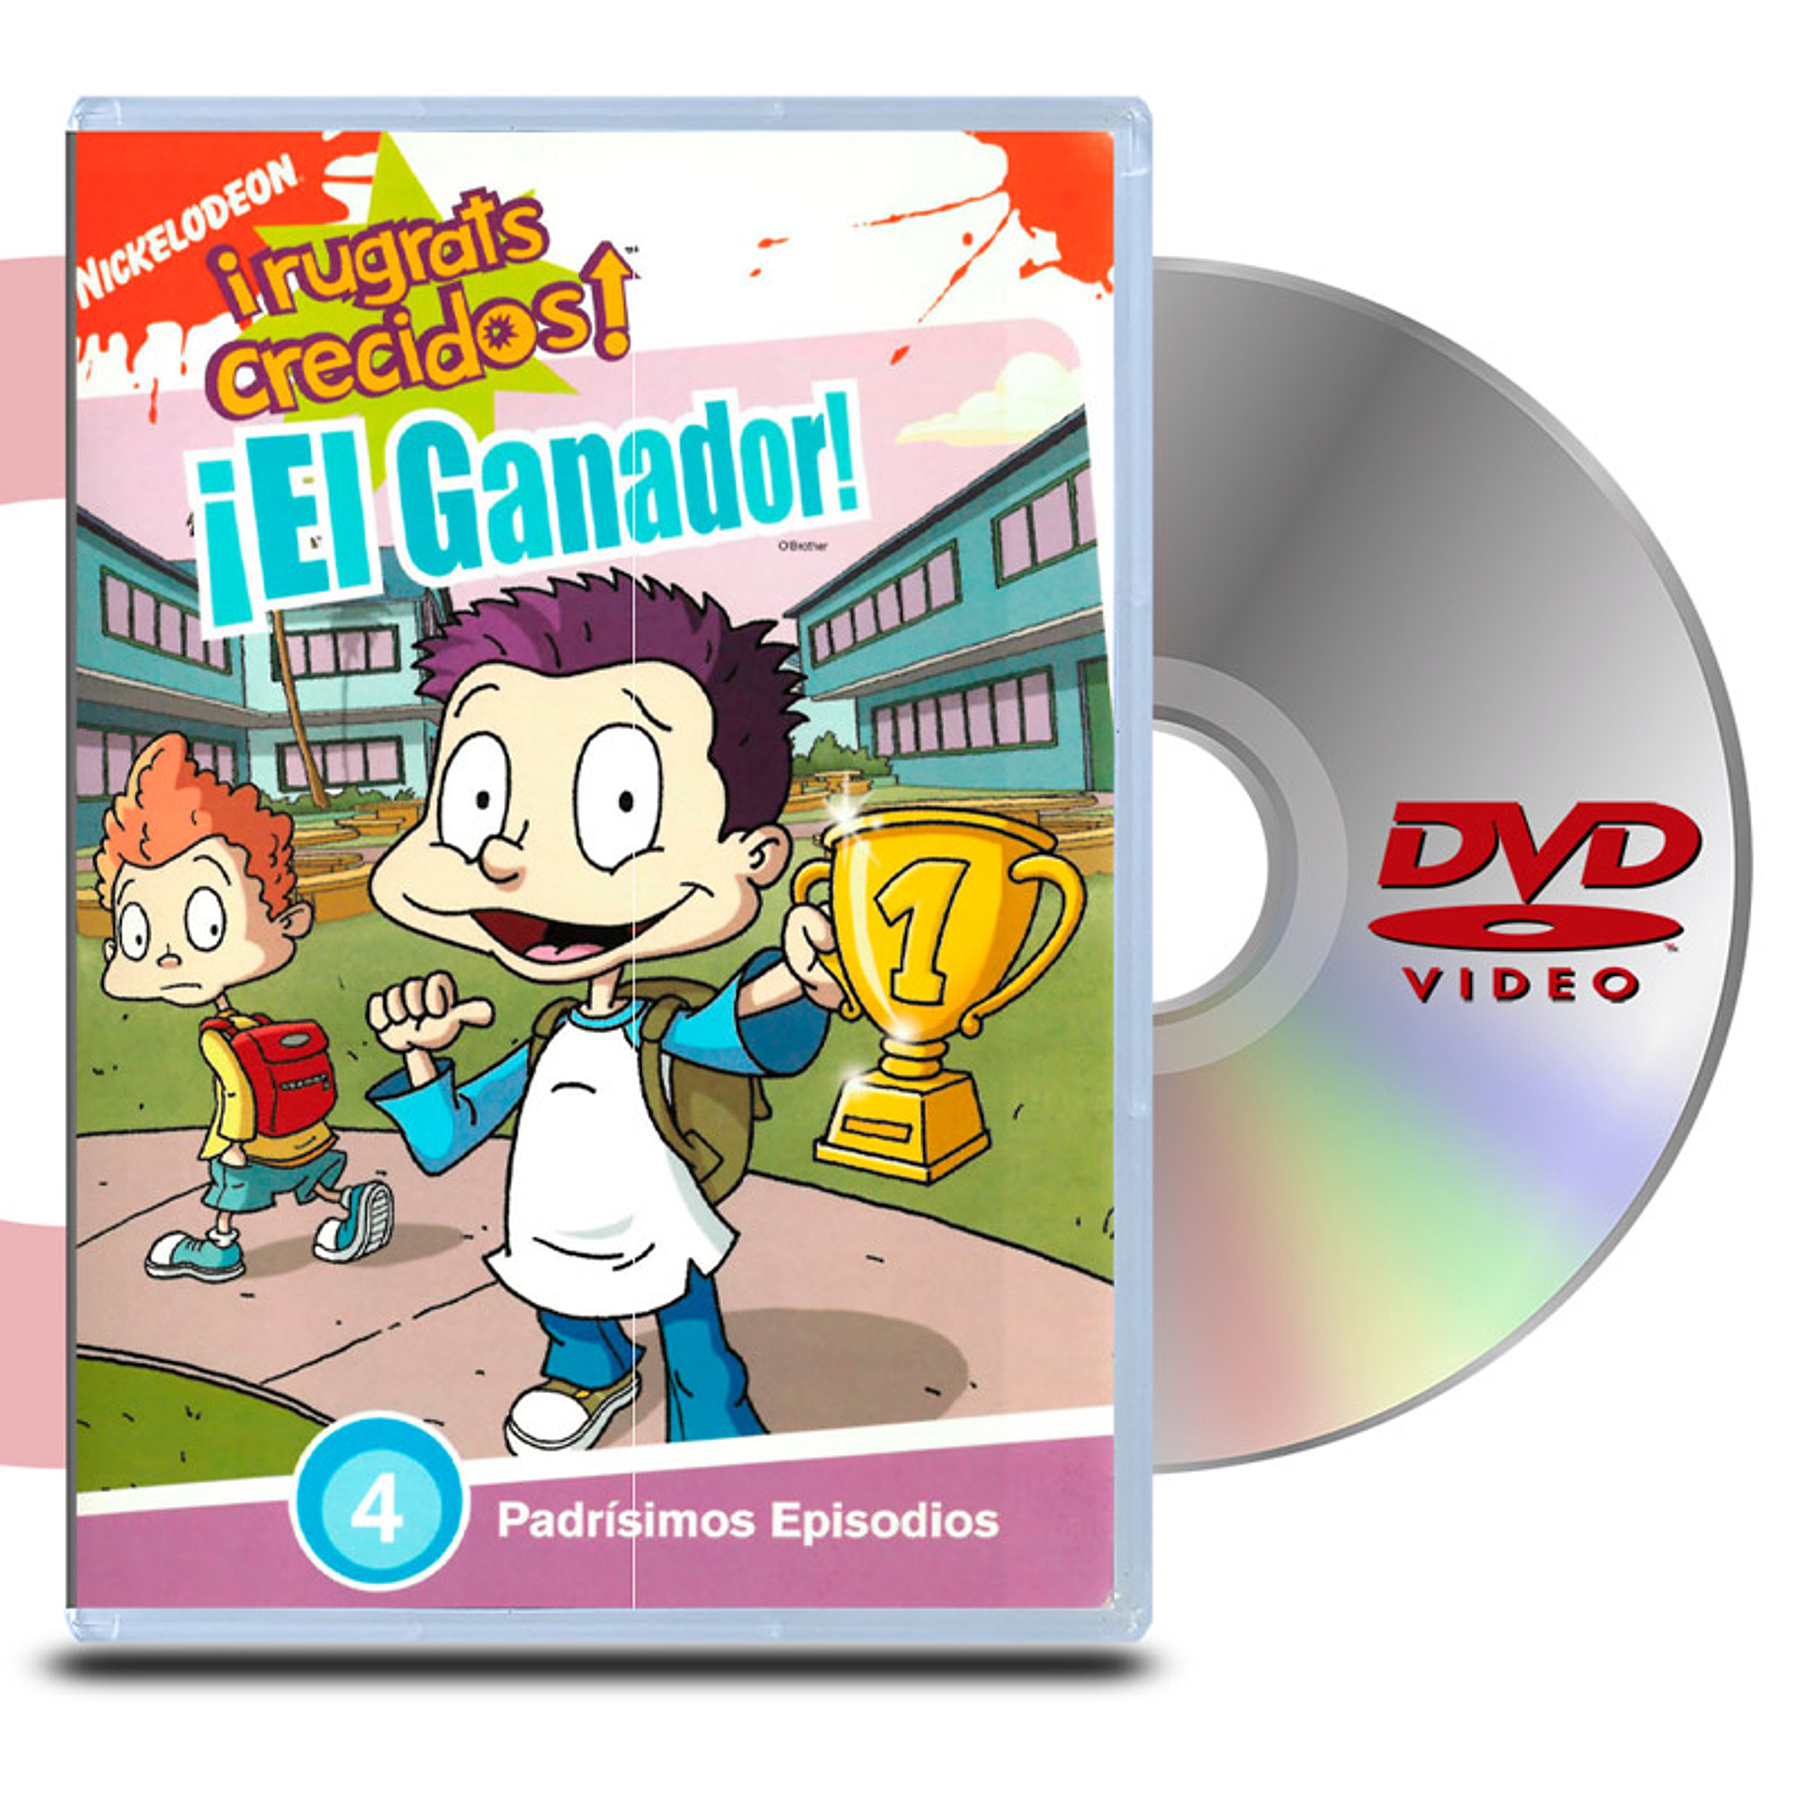 DVD Rugrats Crecidos El ganador